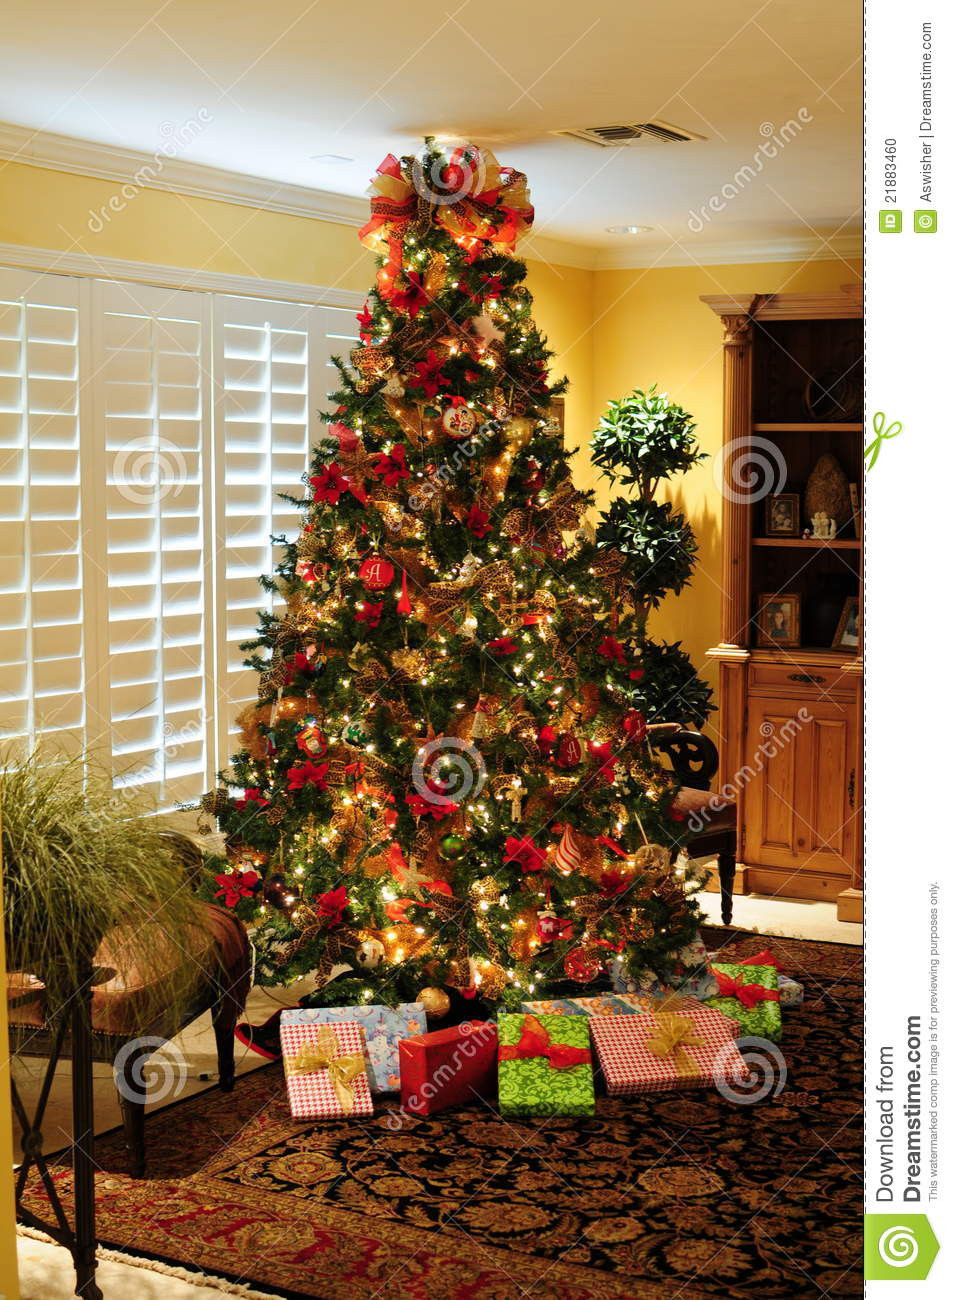 Weihnachtsbaum Geschenke
 Weihnachtsbaum Geschenke stockfoto Bild von dekorationen